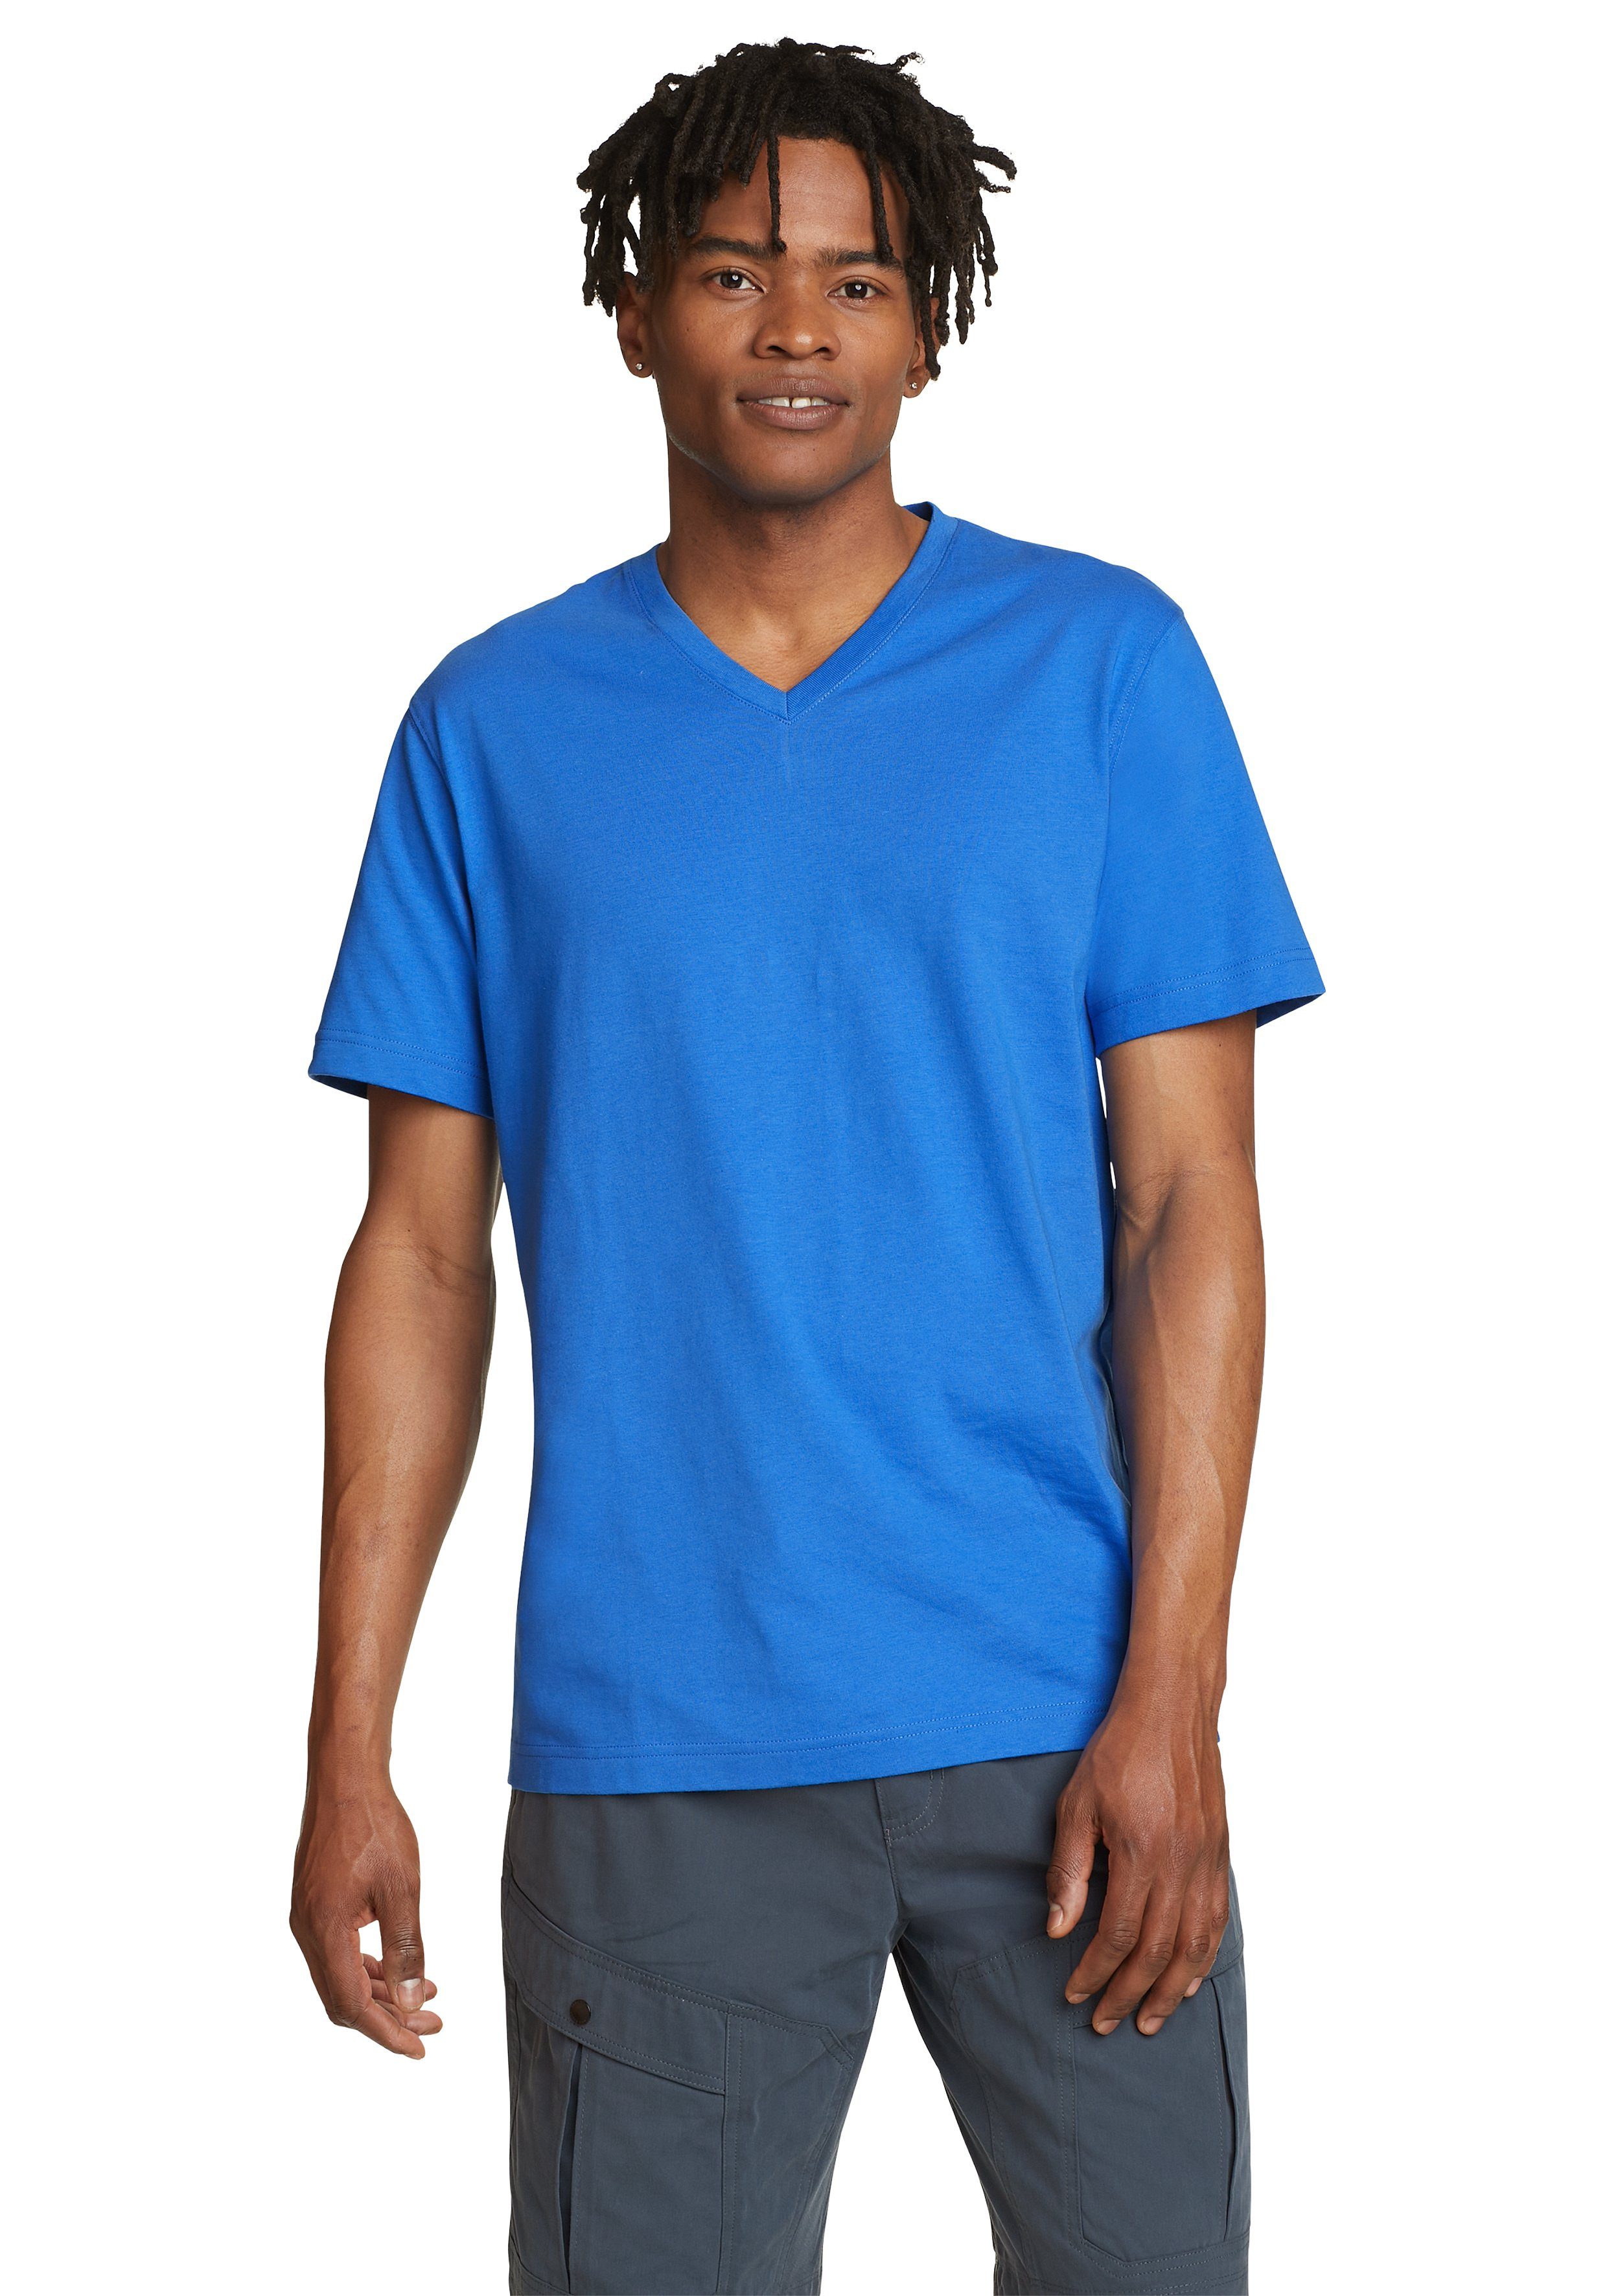 100% Pro Baumwolle Brilliantes Wash T-Shirt Shirt V-Ausschnitt Blau Bauer Eddie - Legend